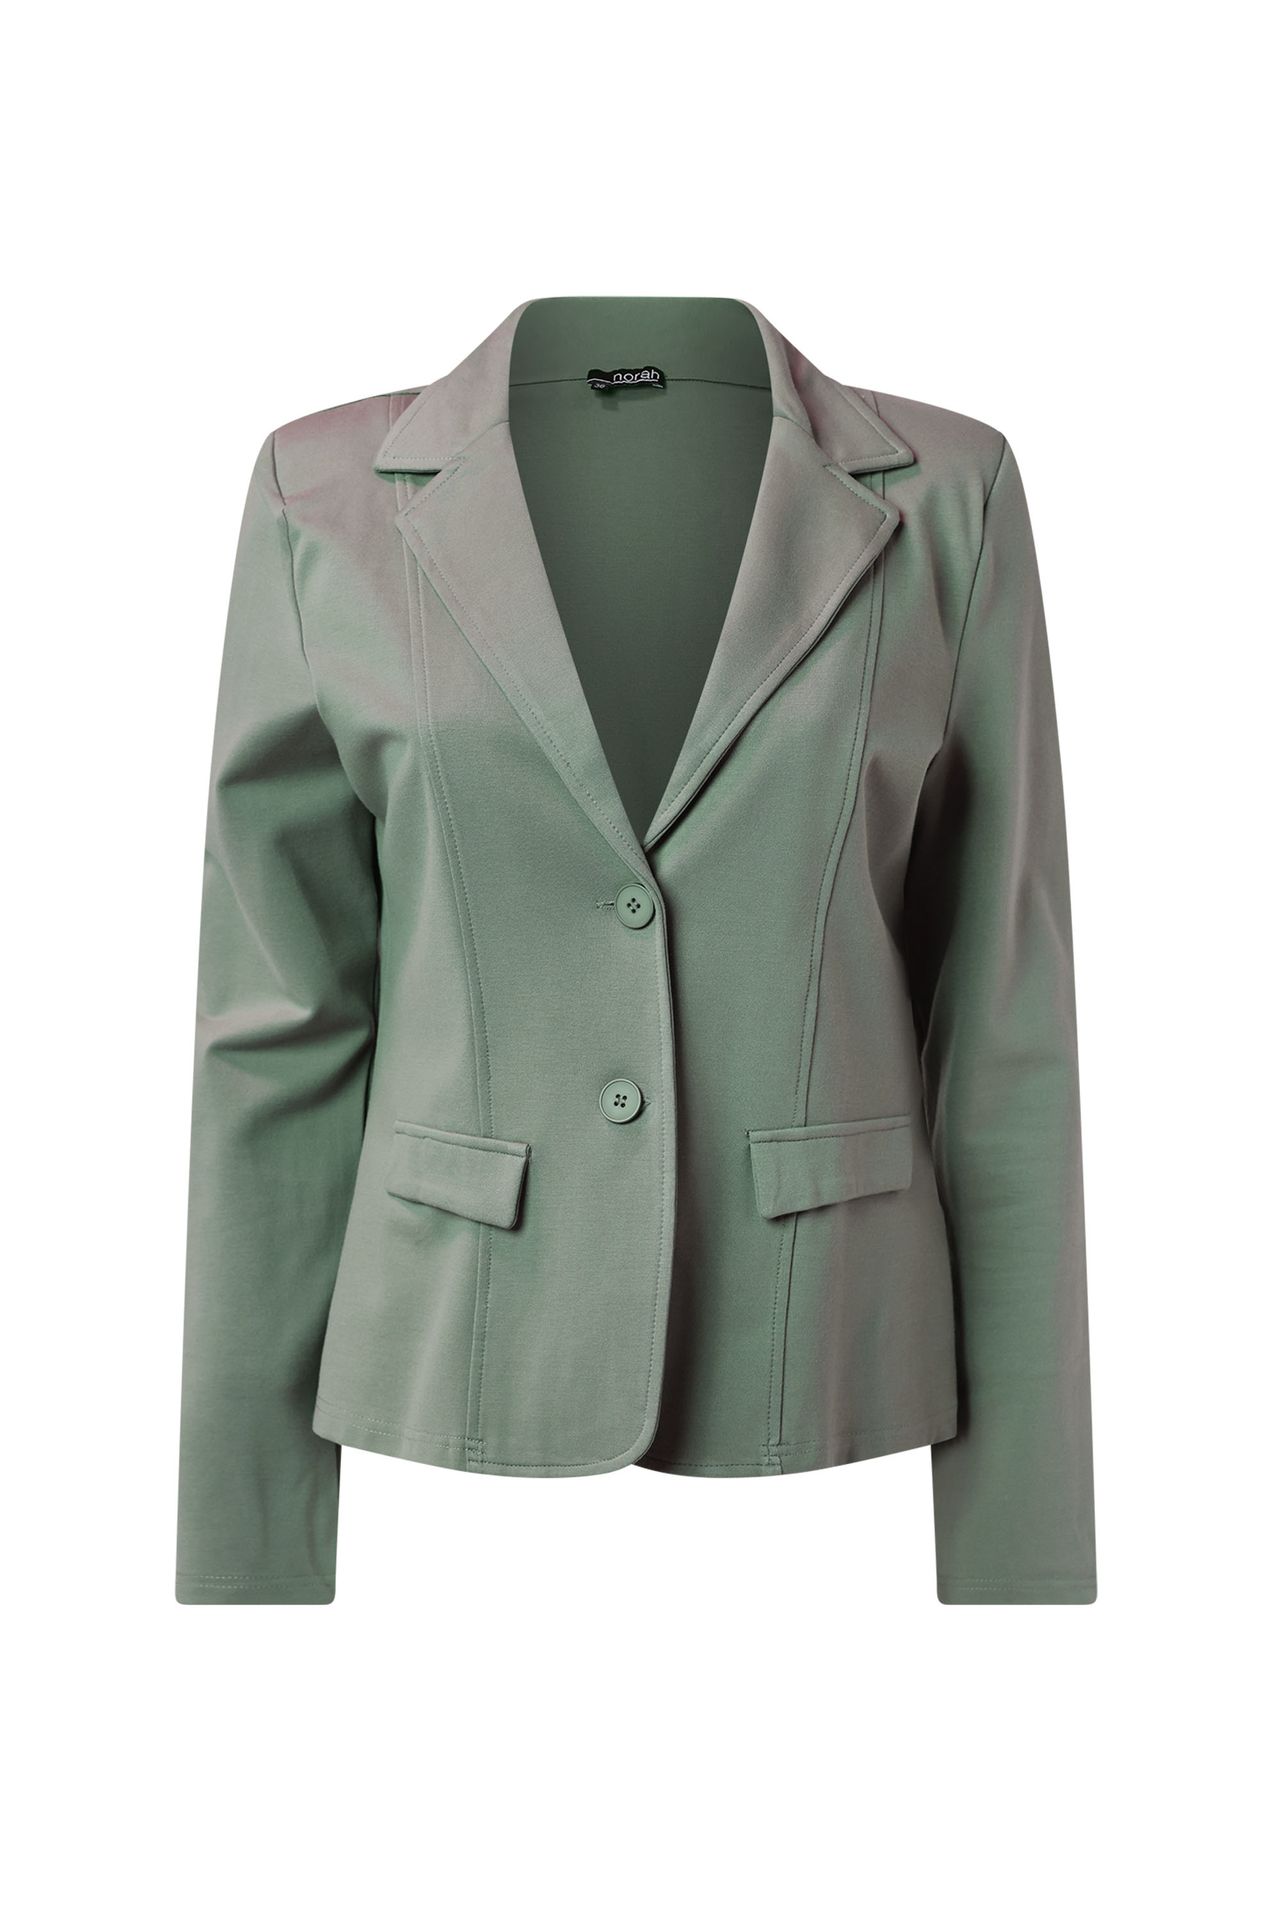 Norah Groene blazer green/grey 213501-540